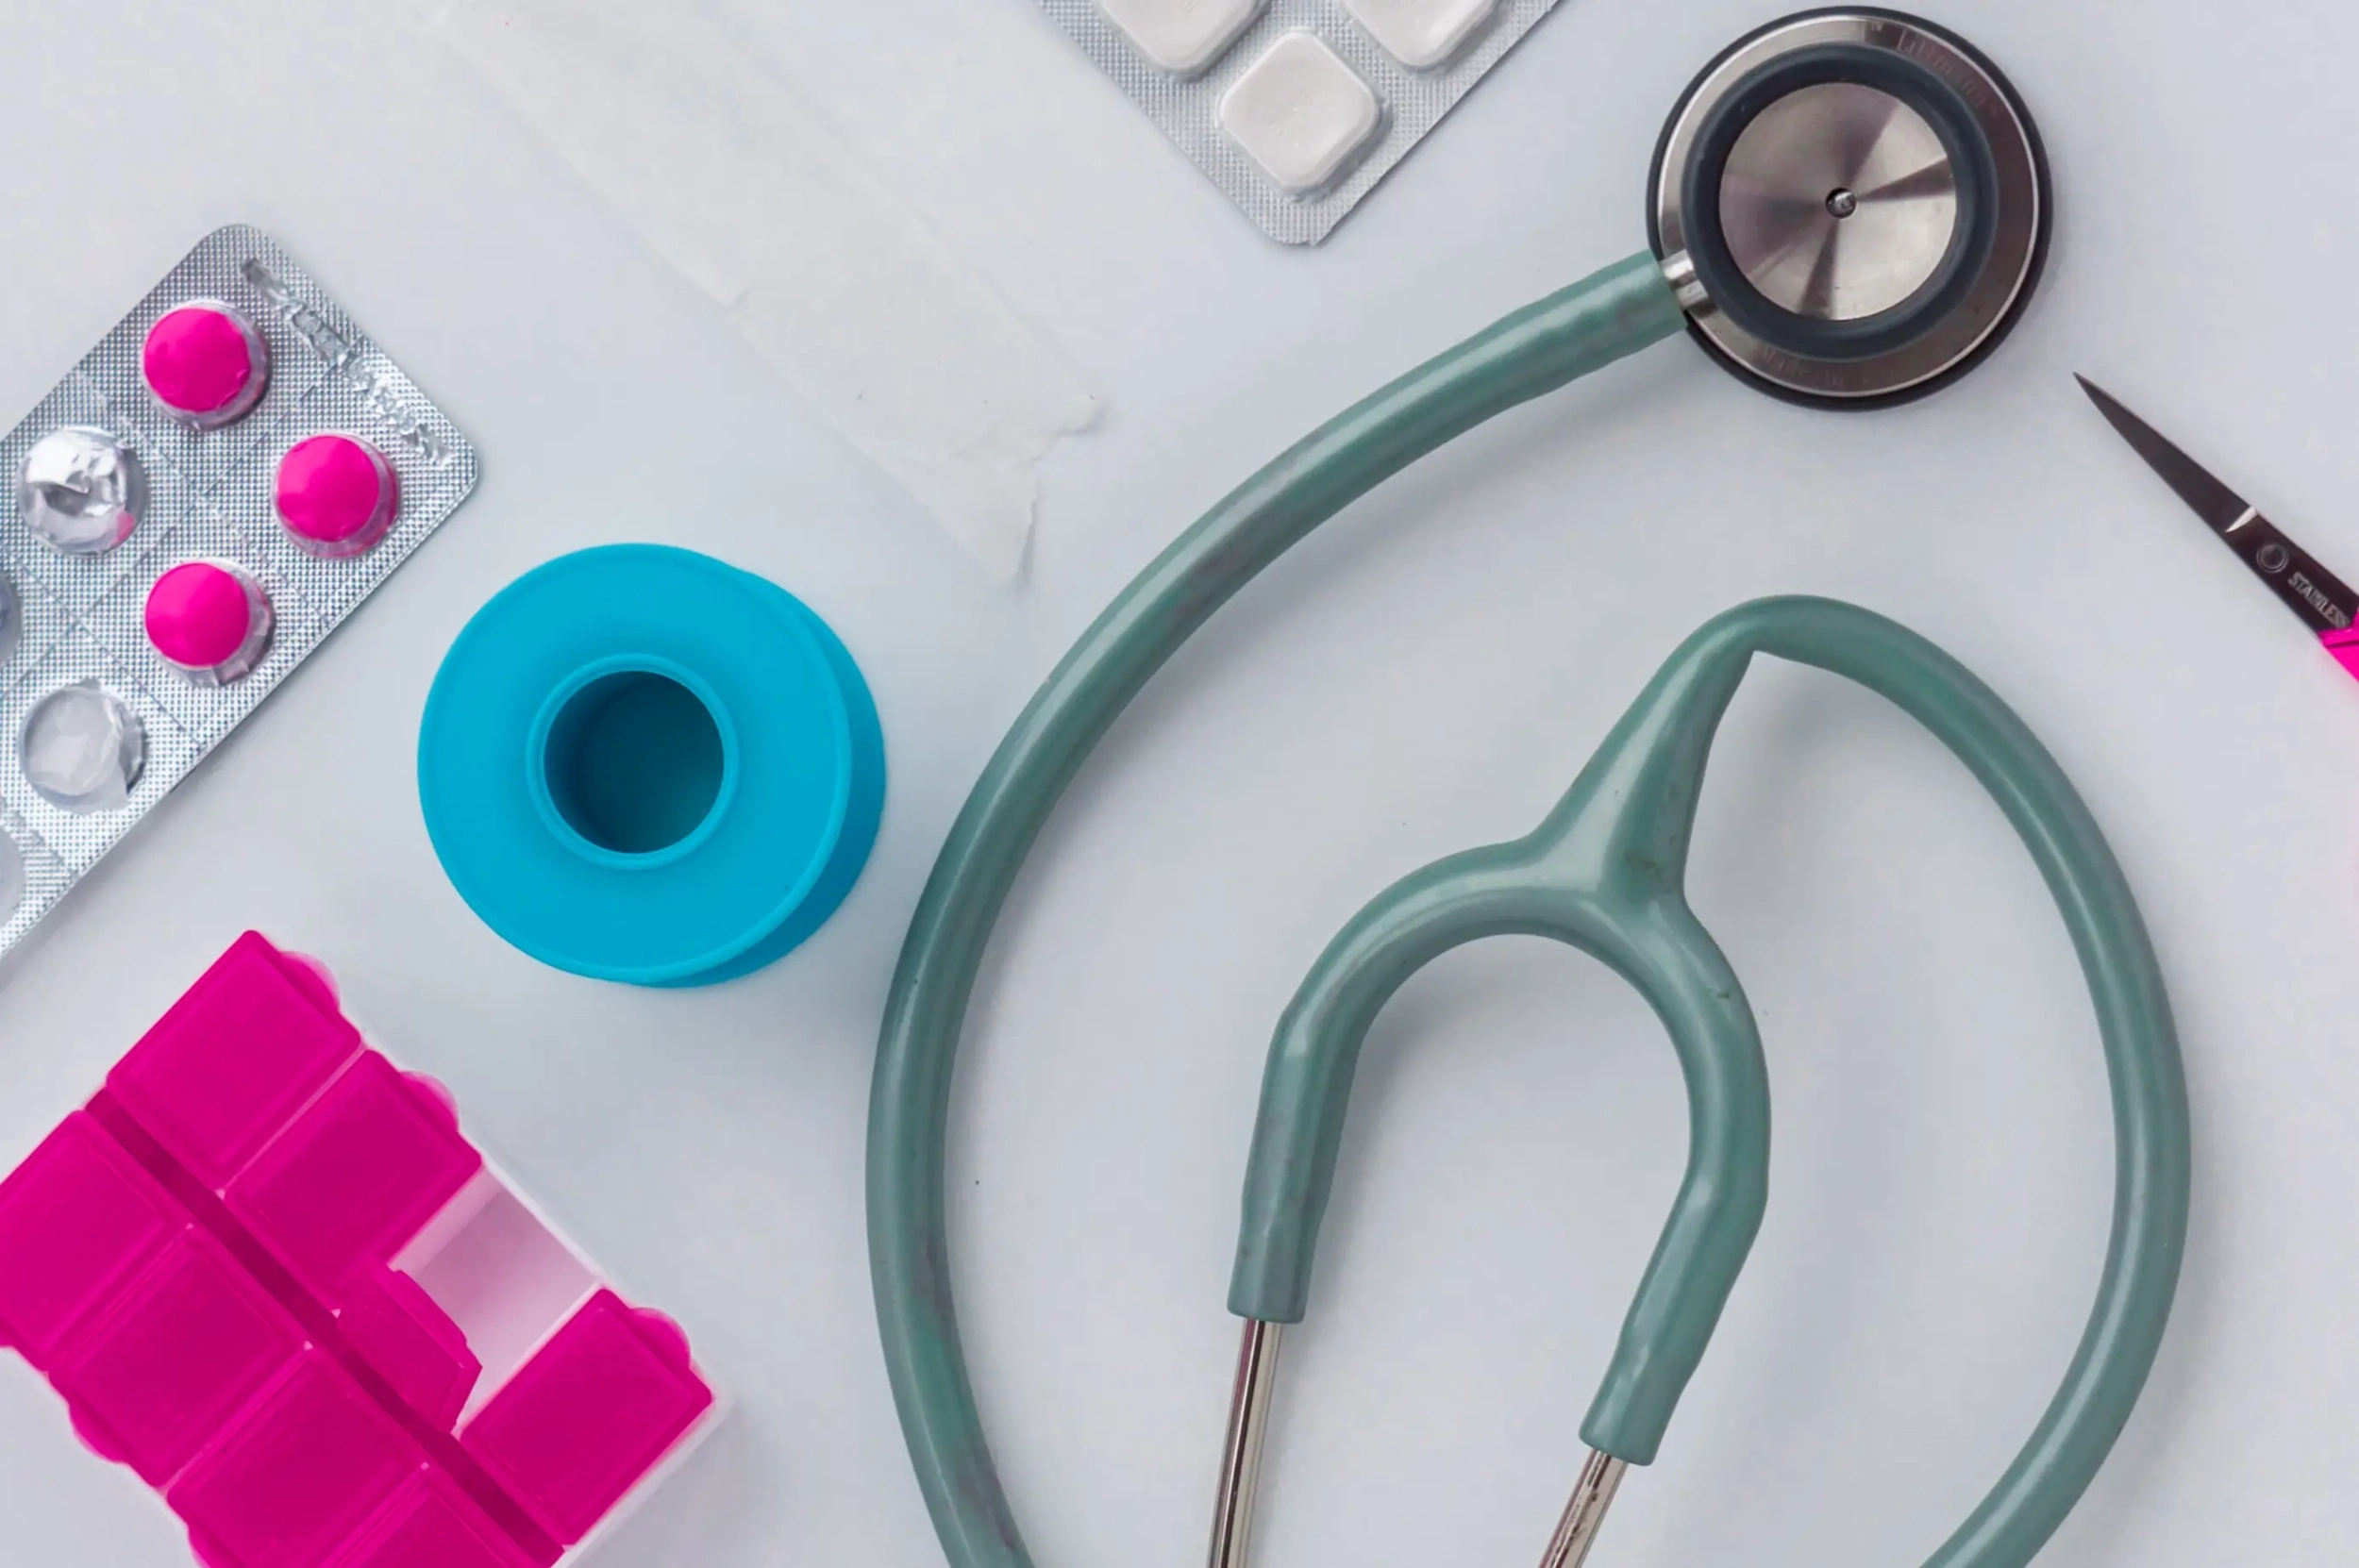 Stetoskop, plastry, leki i inne przedmioty potrzebne w placówce medycznej.